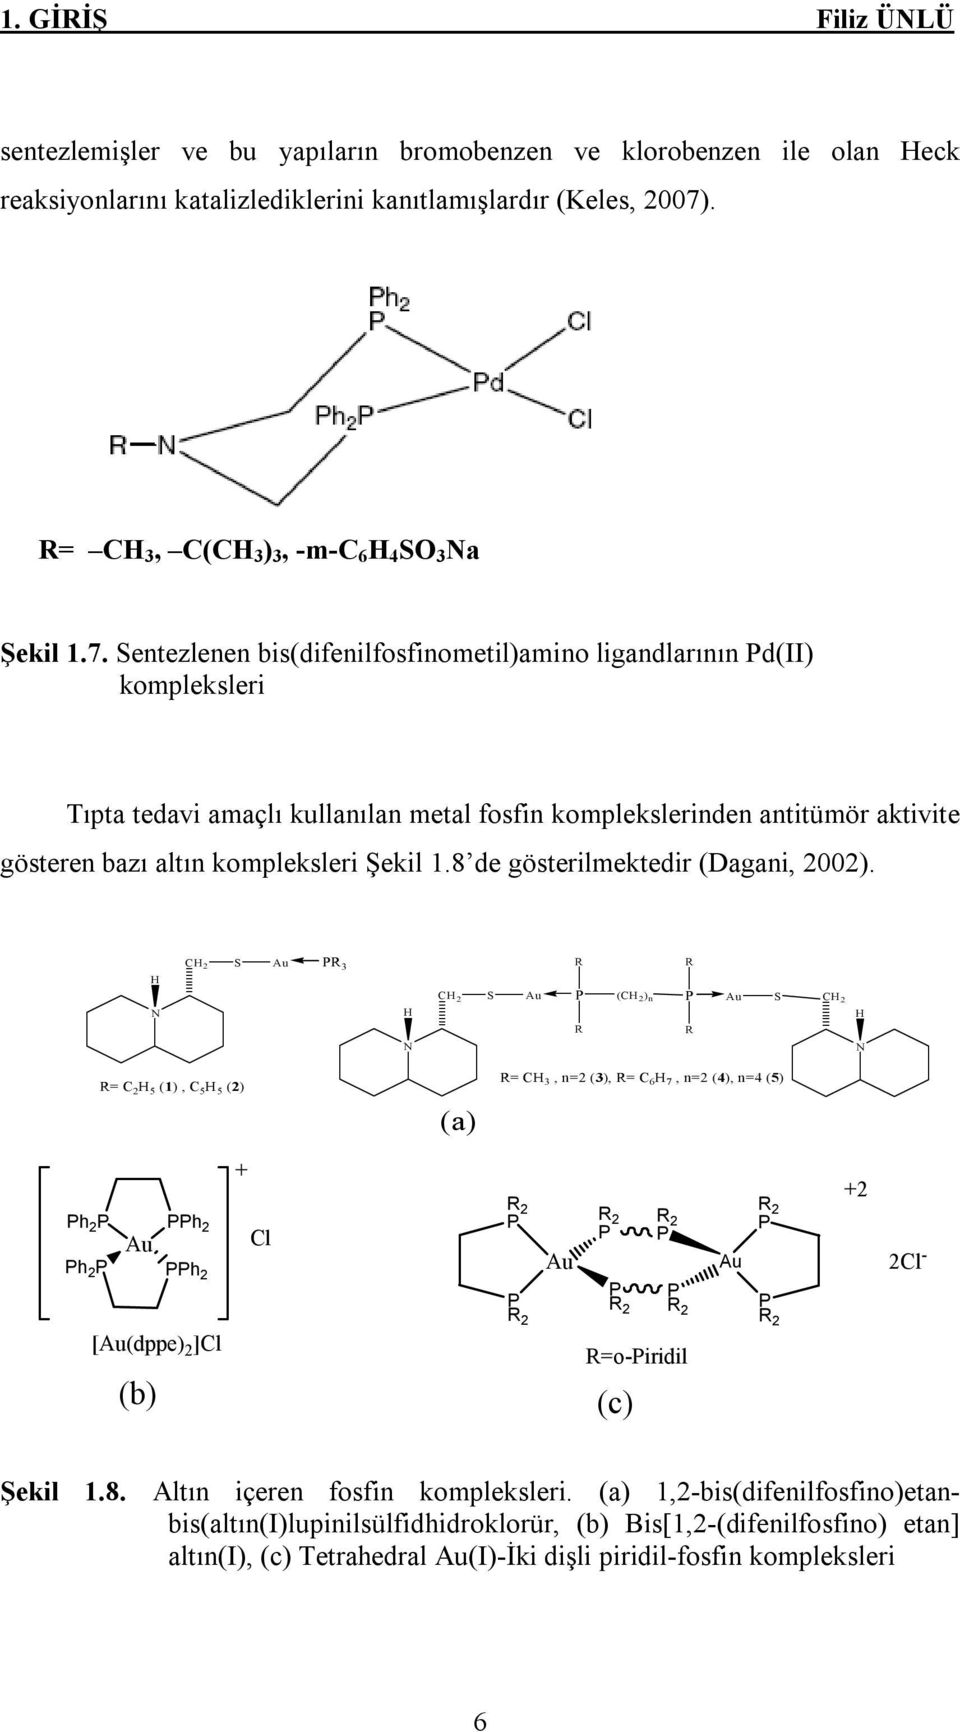 Sentezlenen bis(difenilfosfinometil)amino ligandlarının Pd(II) kompleksleri Tıpta tedavi amaçlı kullanılan metal fosfin komplekslerinden antitümör aktivite gösteren bazı altın kompleksleri Şekil 1.